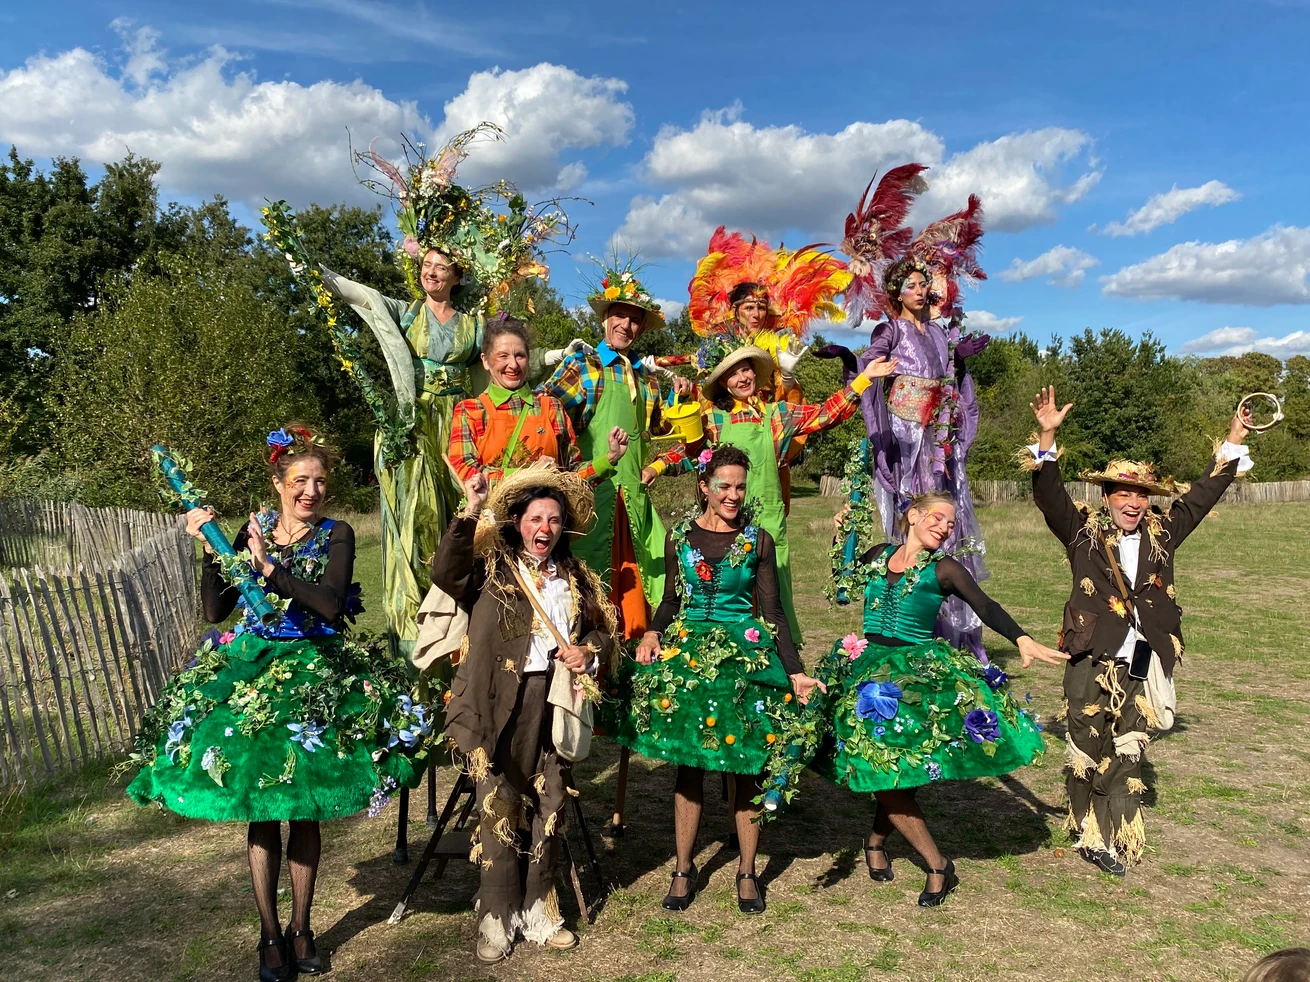 Journée d'animations estivale a Fresnes avec la compagnie acta fabula et ses femmes déguisées en fleurs aunmilieu de la nature.